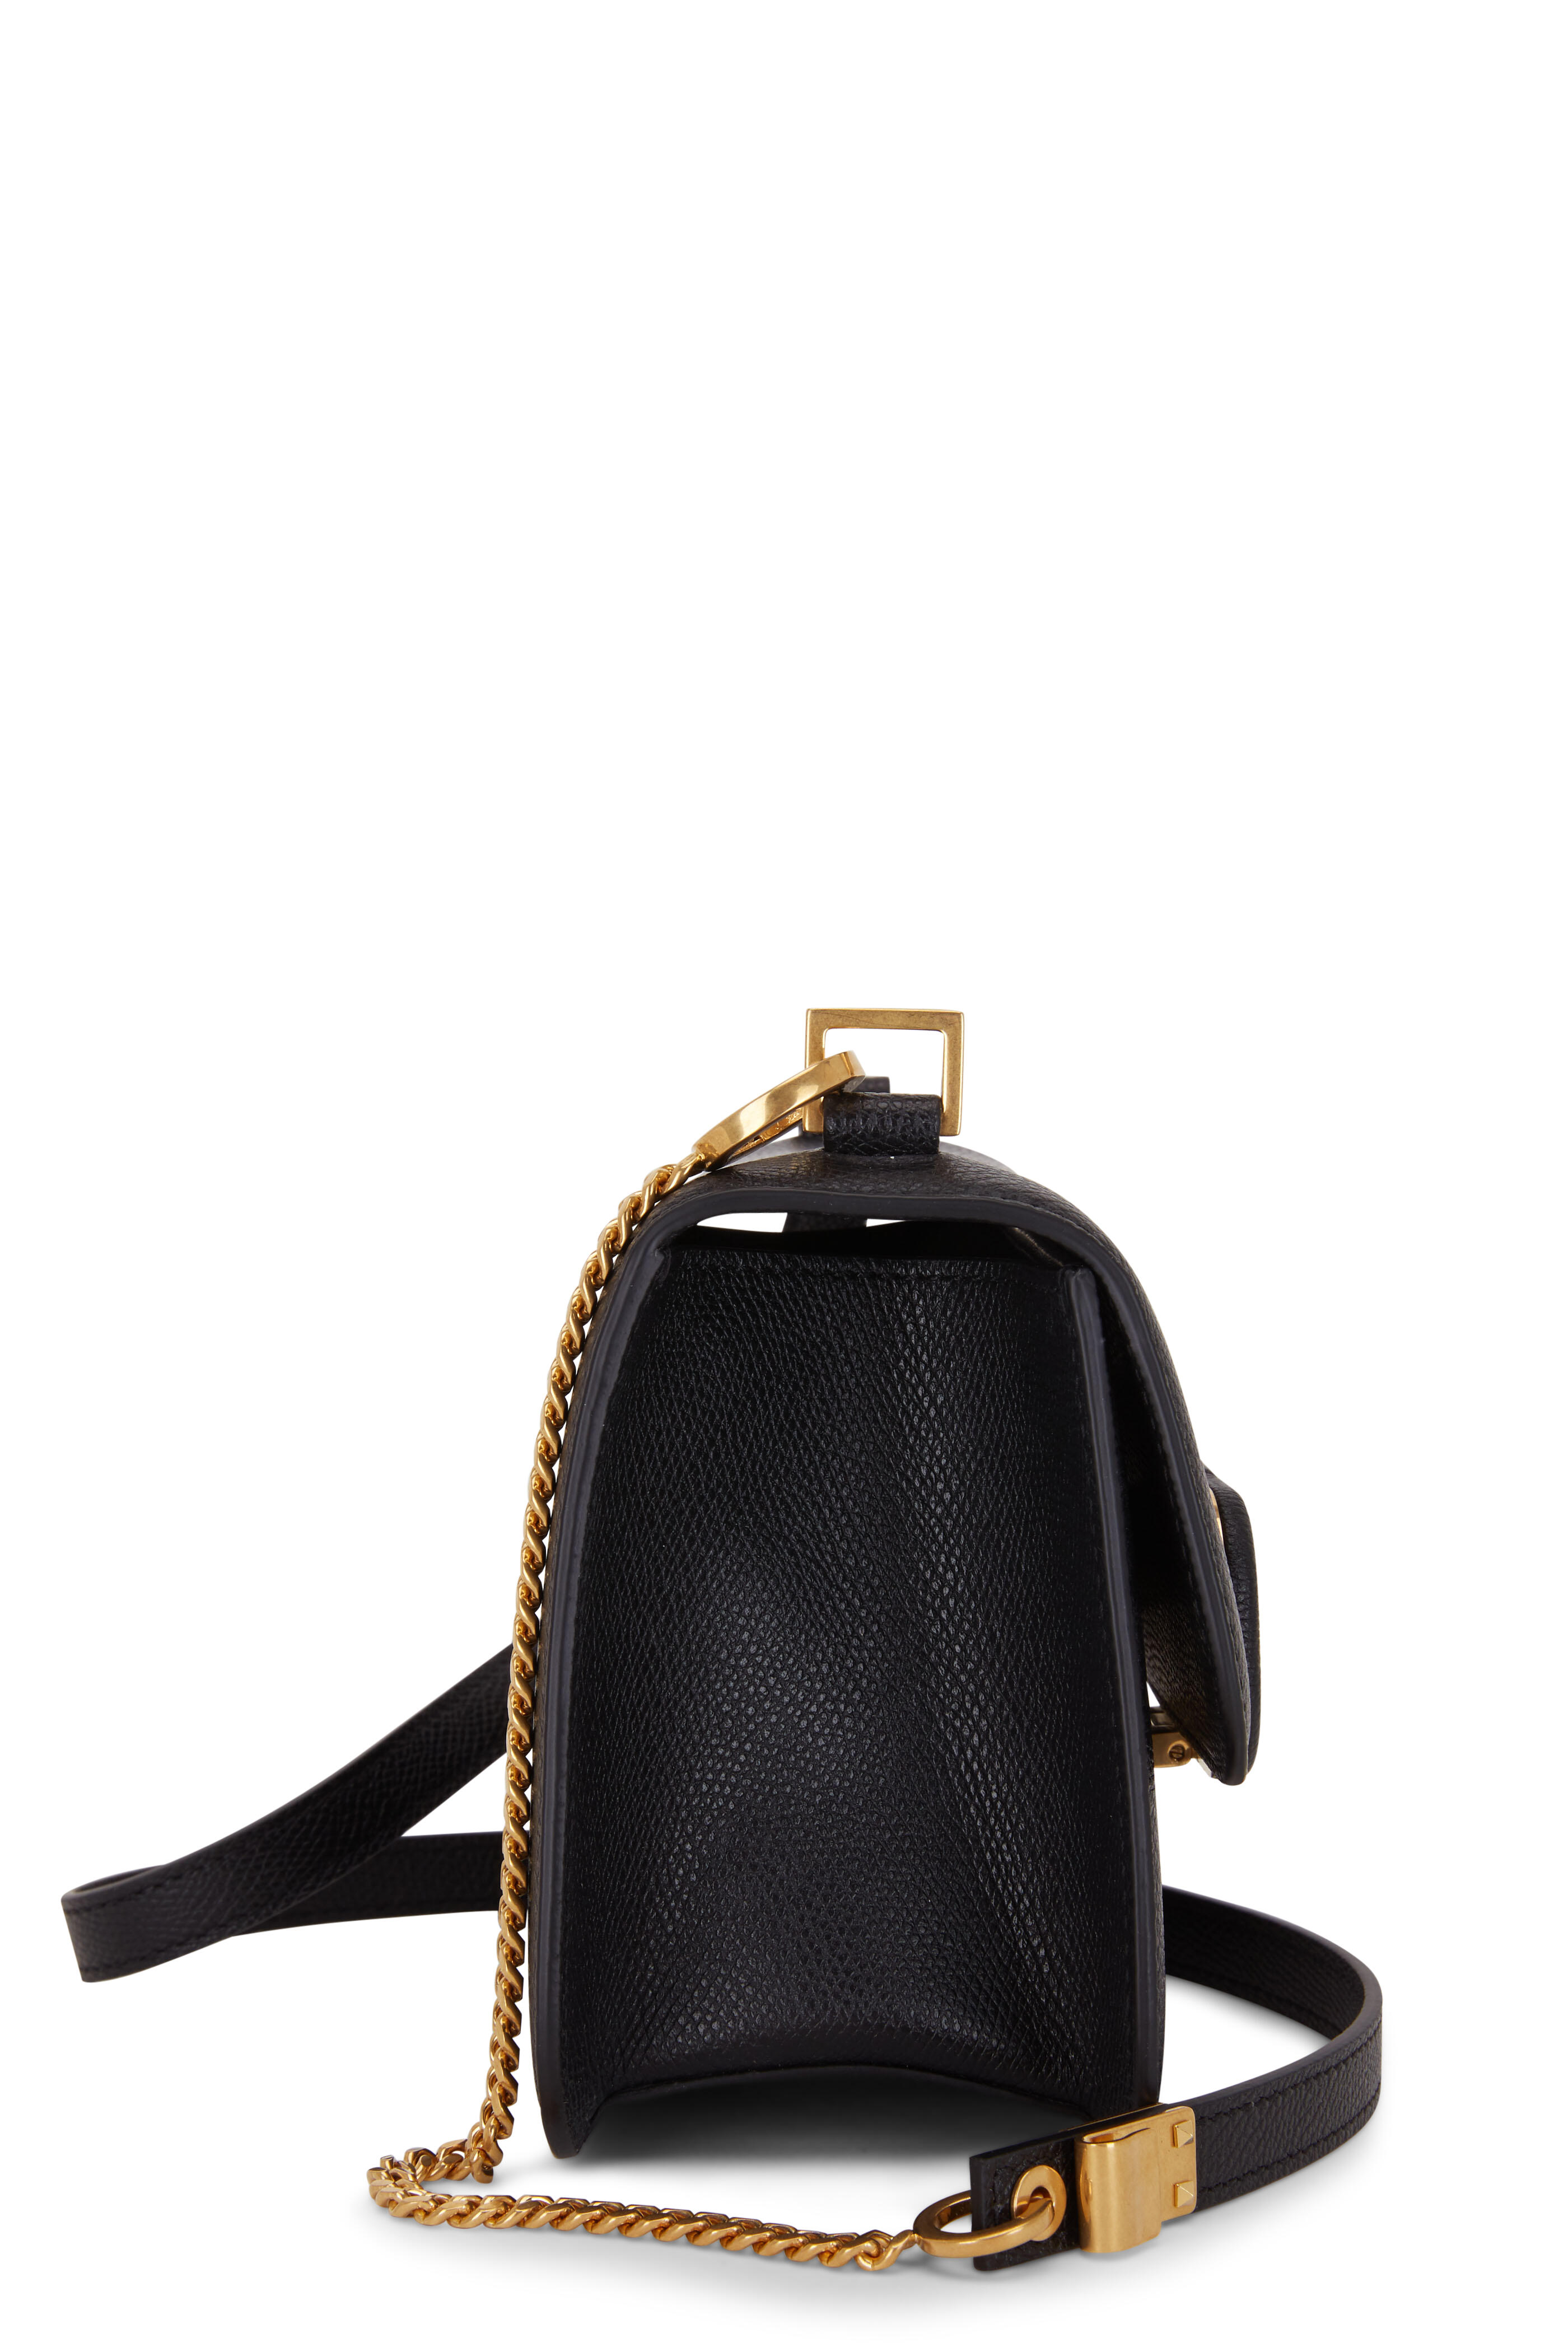 Vsling leather crossbody bag Valentino Garavani Black in Leather - 32399675